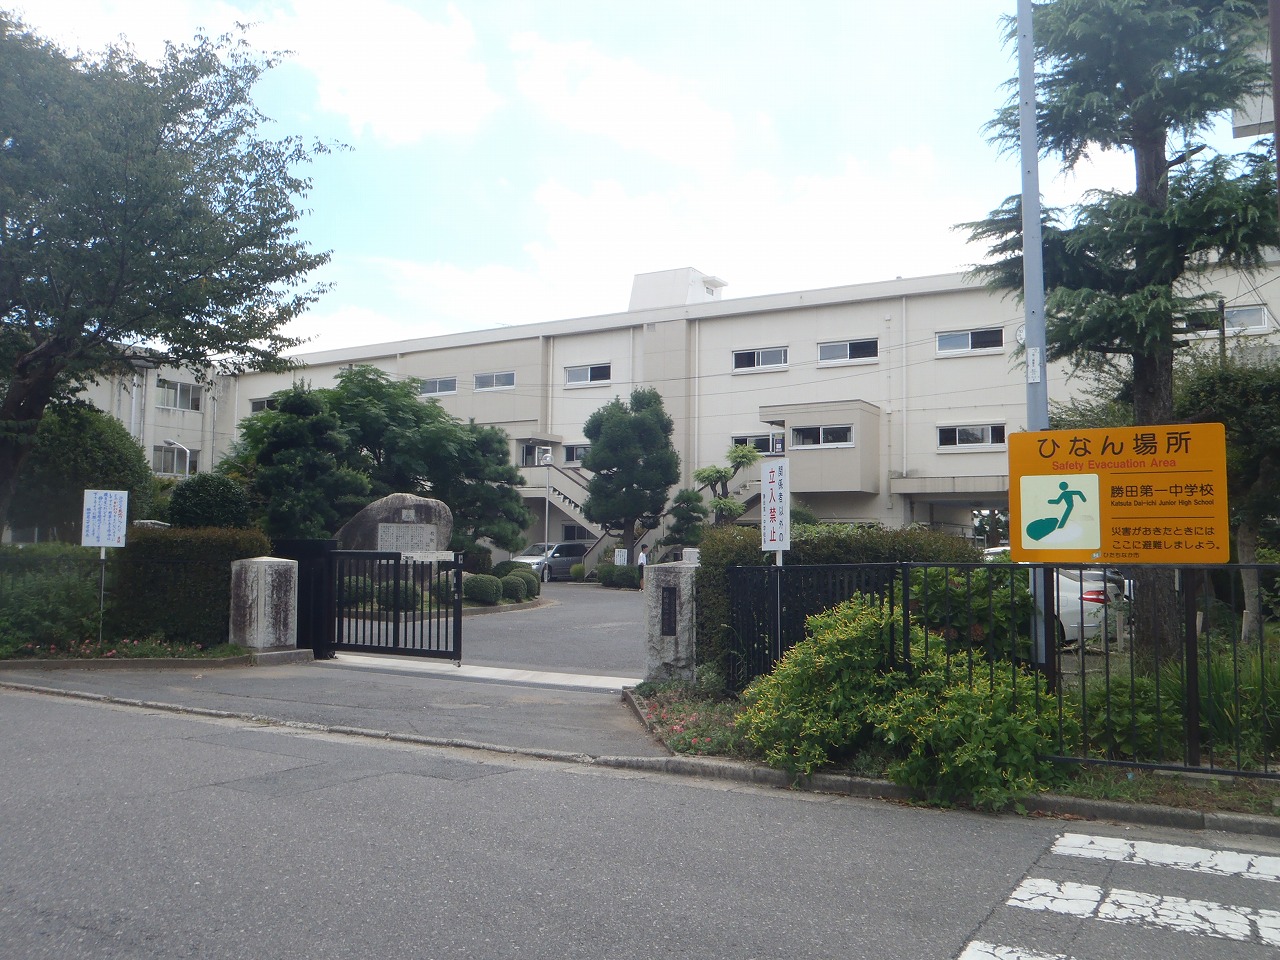 Junior high school. Hitachinaka Municipal Katsuta first junior high school (junior high school) up to 1300m